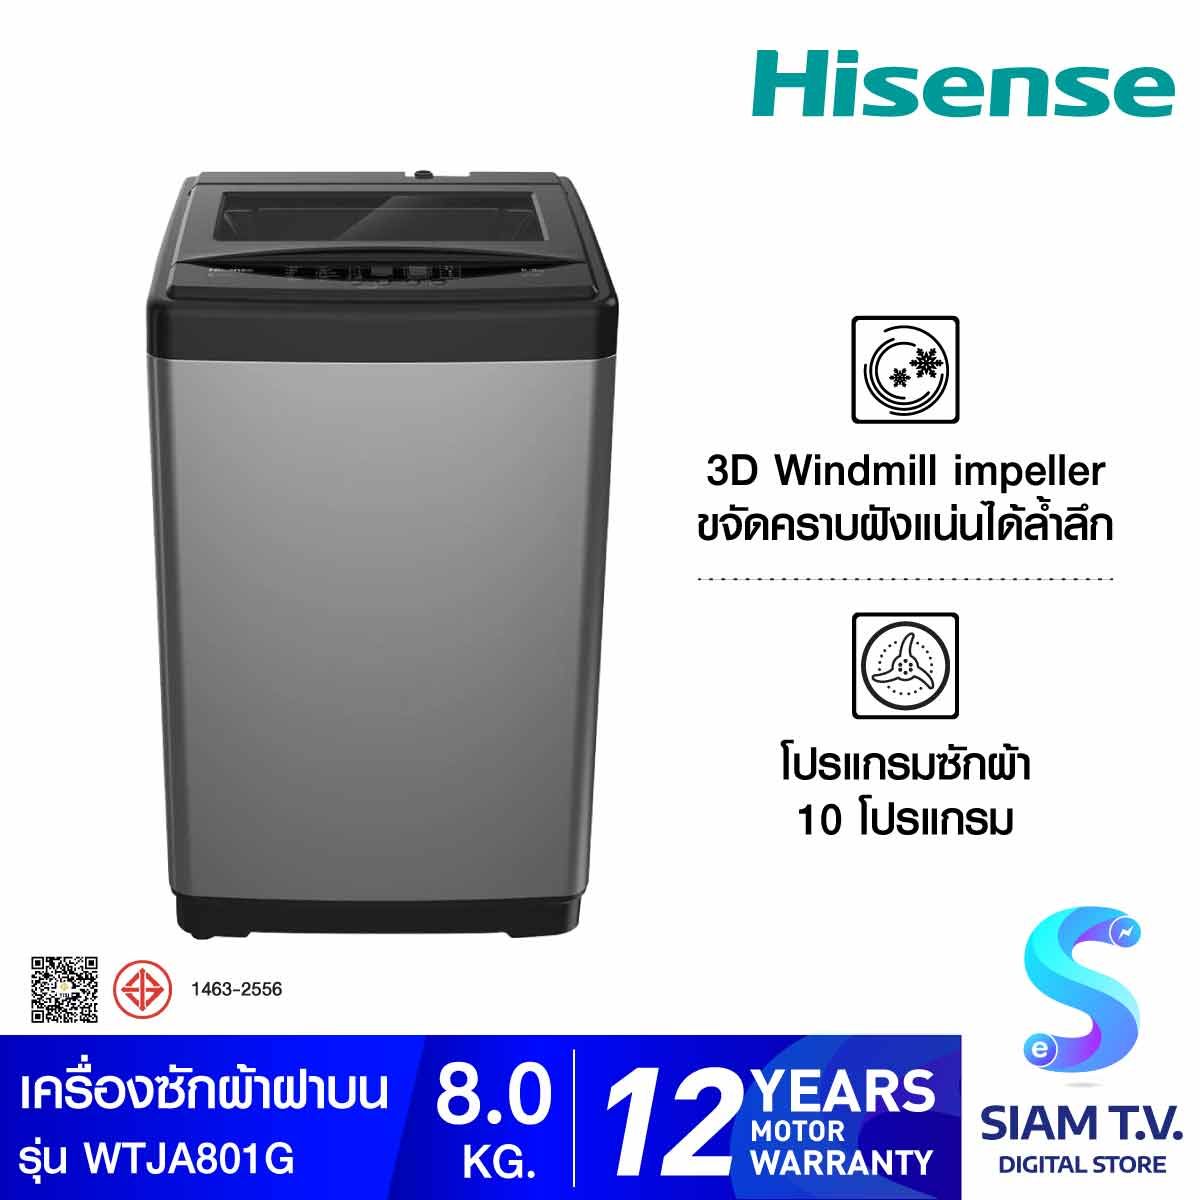 HISENSE เครื่องซักผ้าฝาบน 8Kg. สีเทา รุ่น WTJA801G